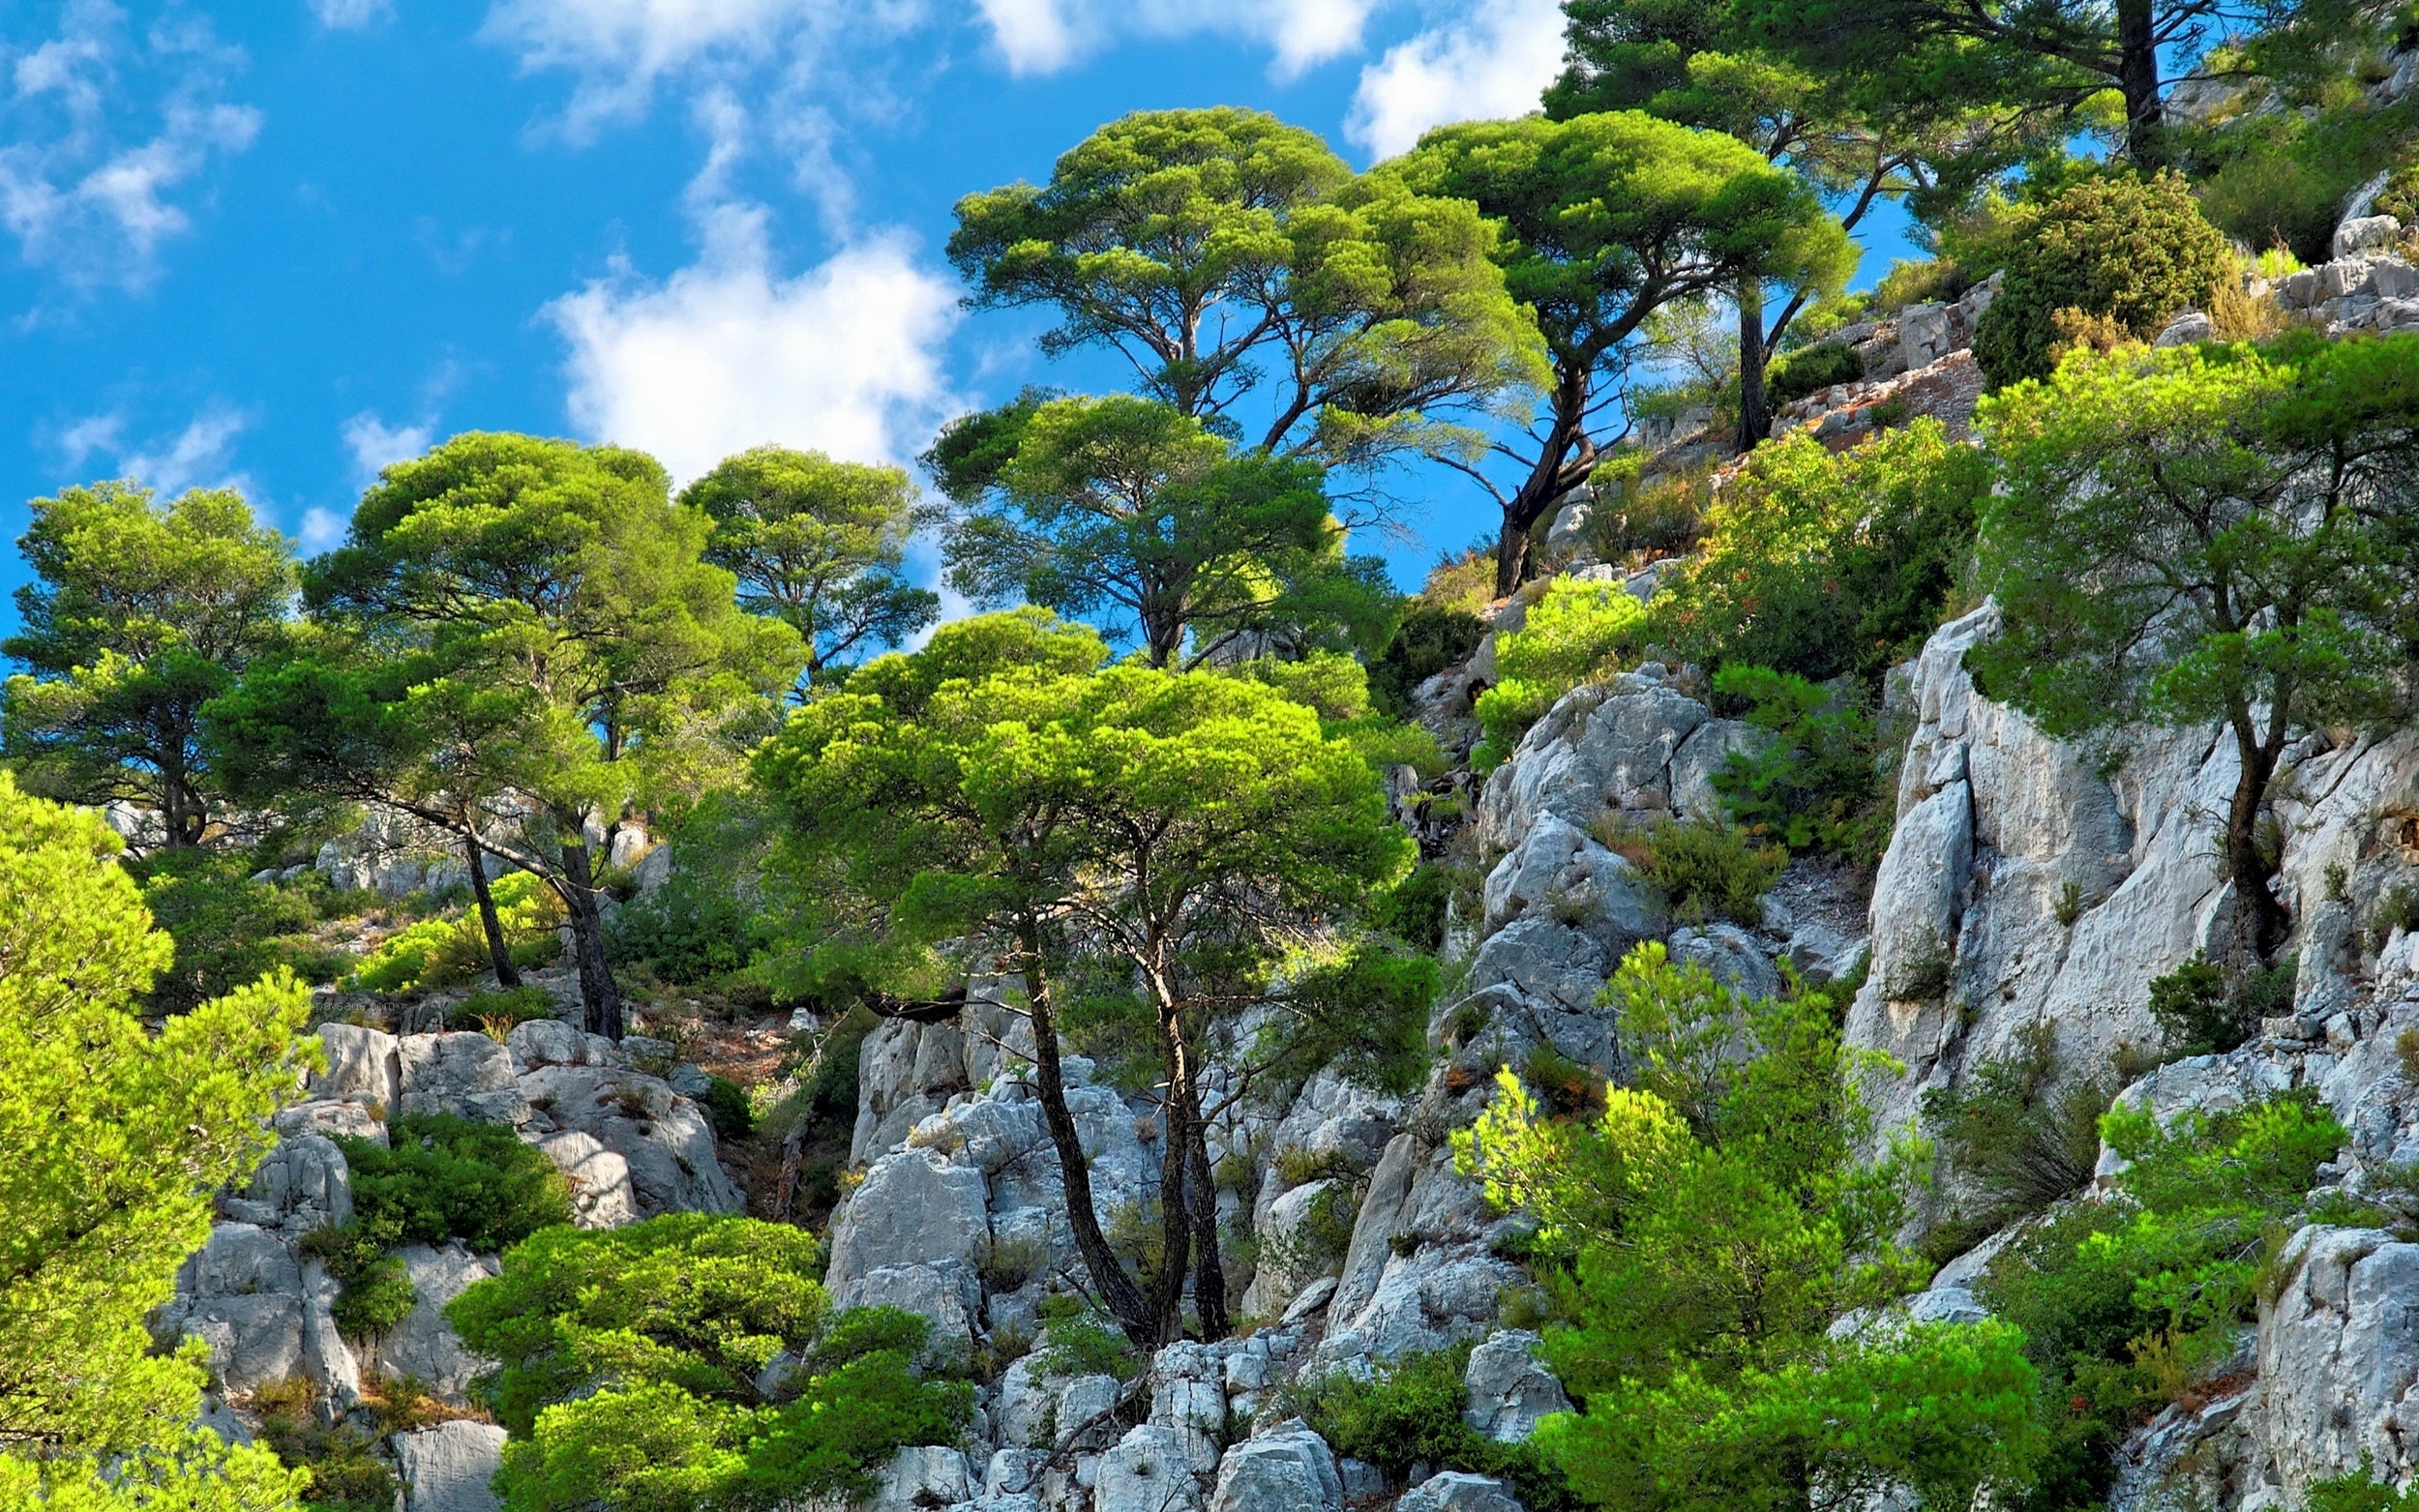 General 2500x1563 nature landscape clouds trees cliff shrubs blue green summer sunlight daylight sky blue rocks